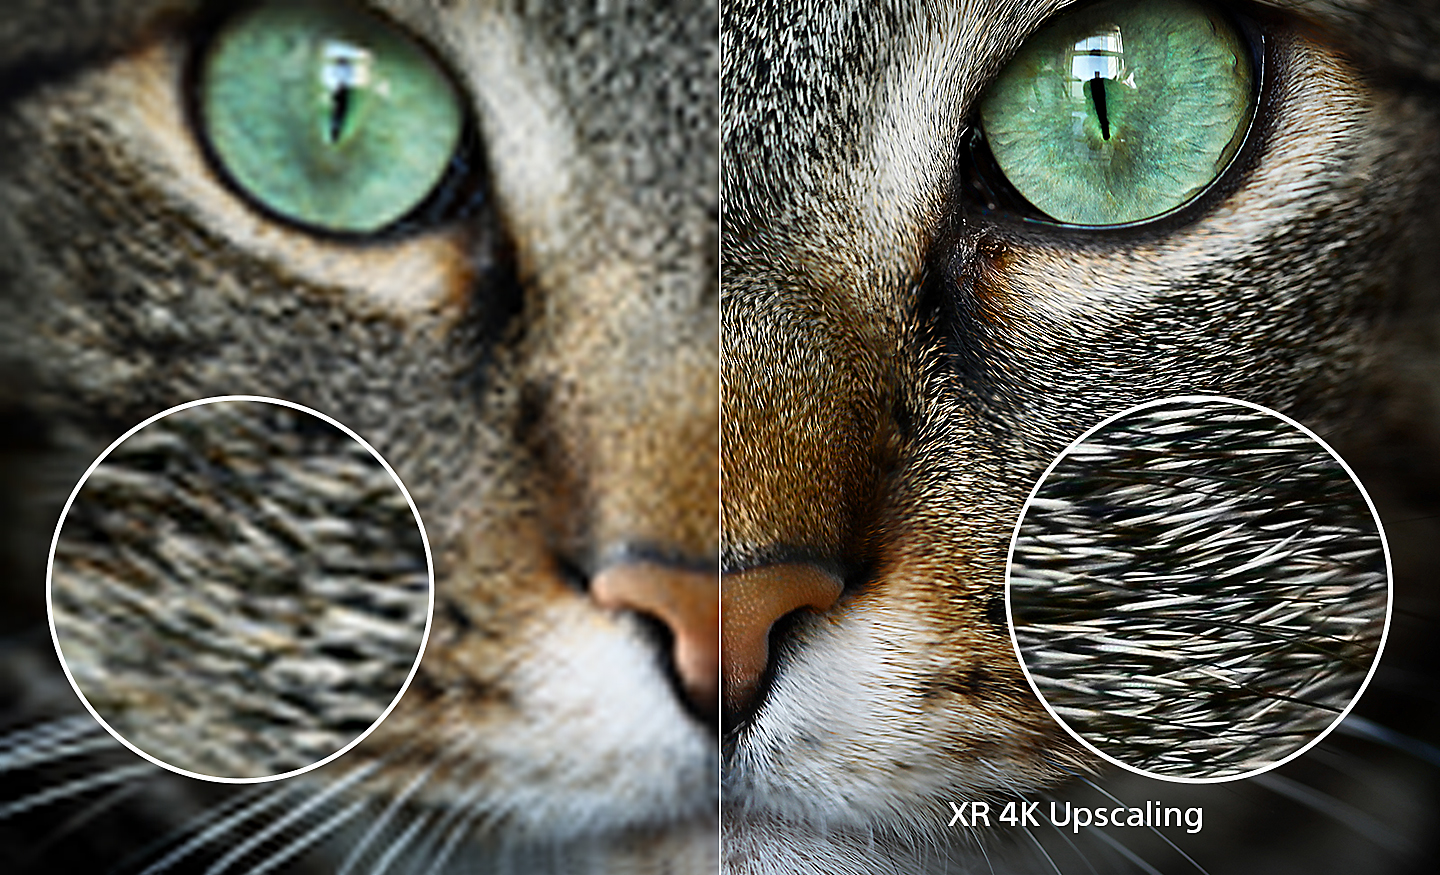 Розділений екран із зображенням голови кішки праворуч, що показує додаткові деталі після збільшення масштабу XR 4K